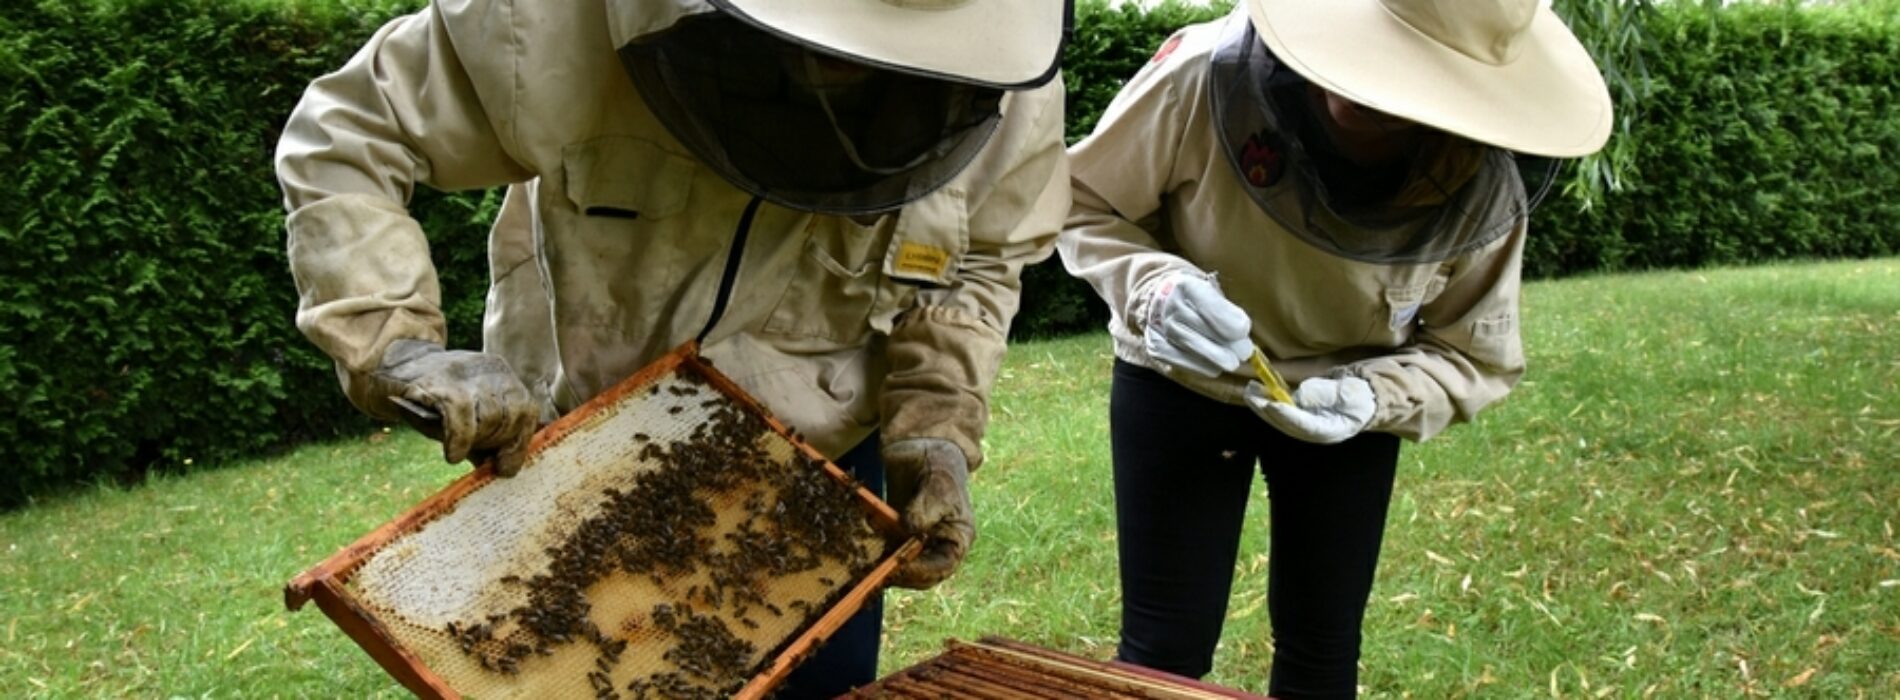 Poddawanie matki pszczelej do ula przy starostwie